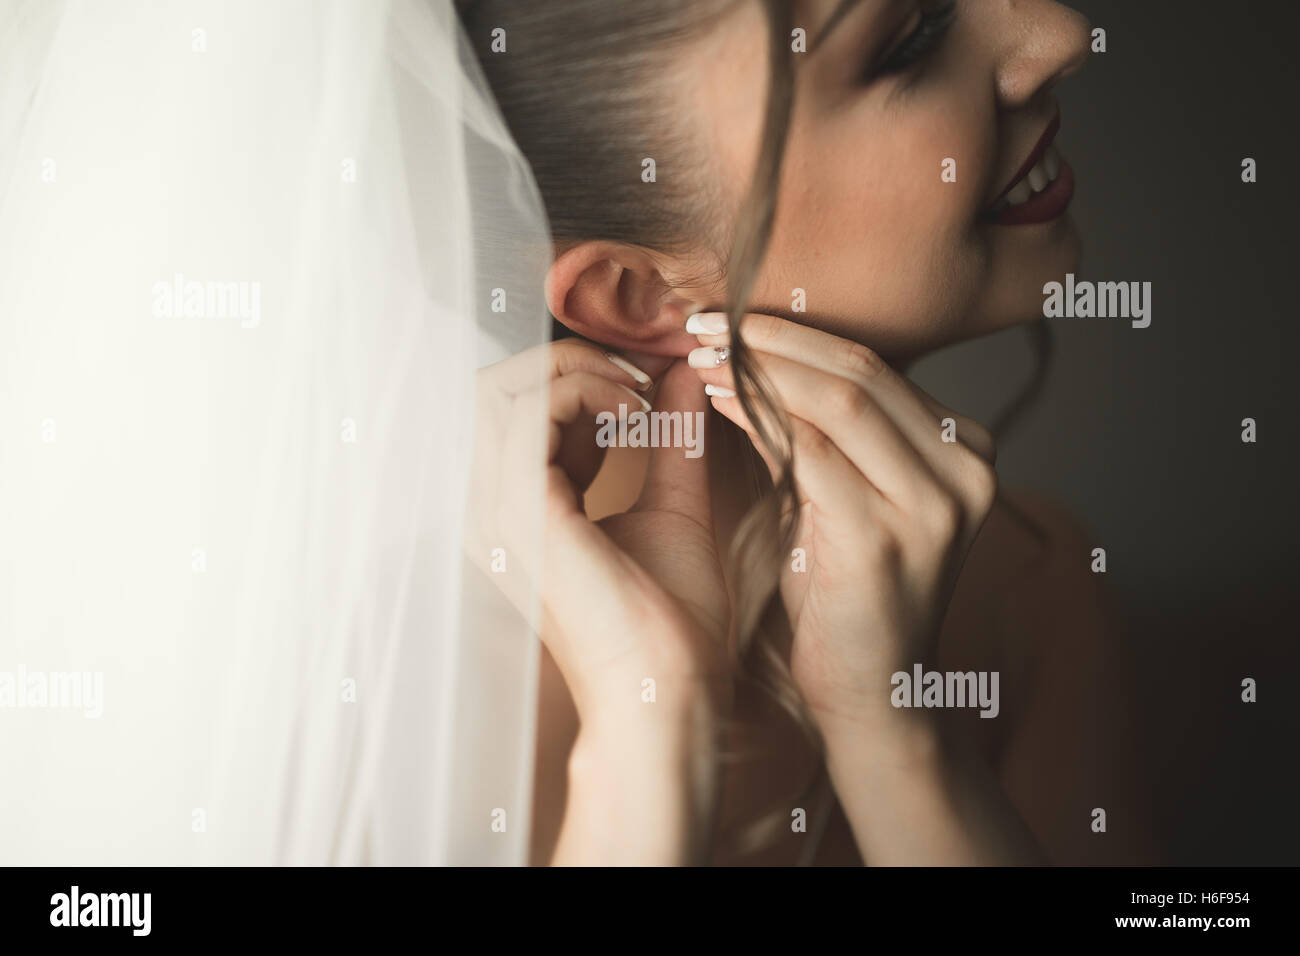 Mariée de Luxe in white dress posing tout en se préparant pour la cérémonie de mariage Banque D'Images